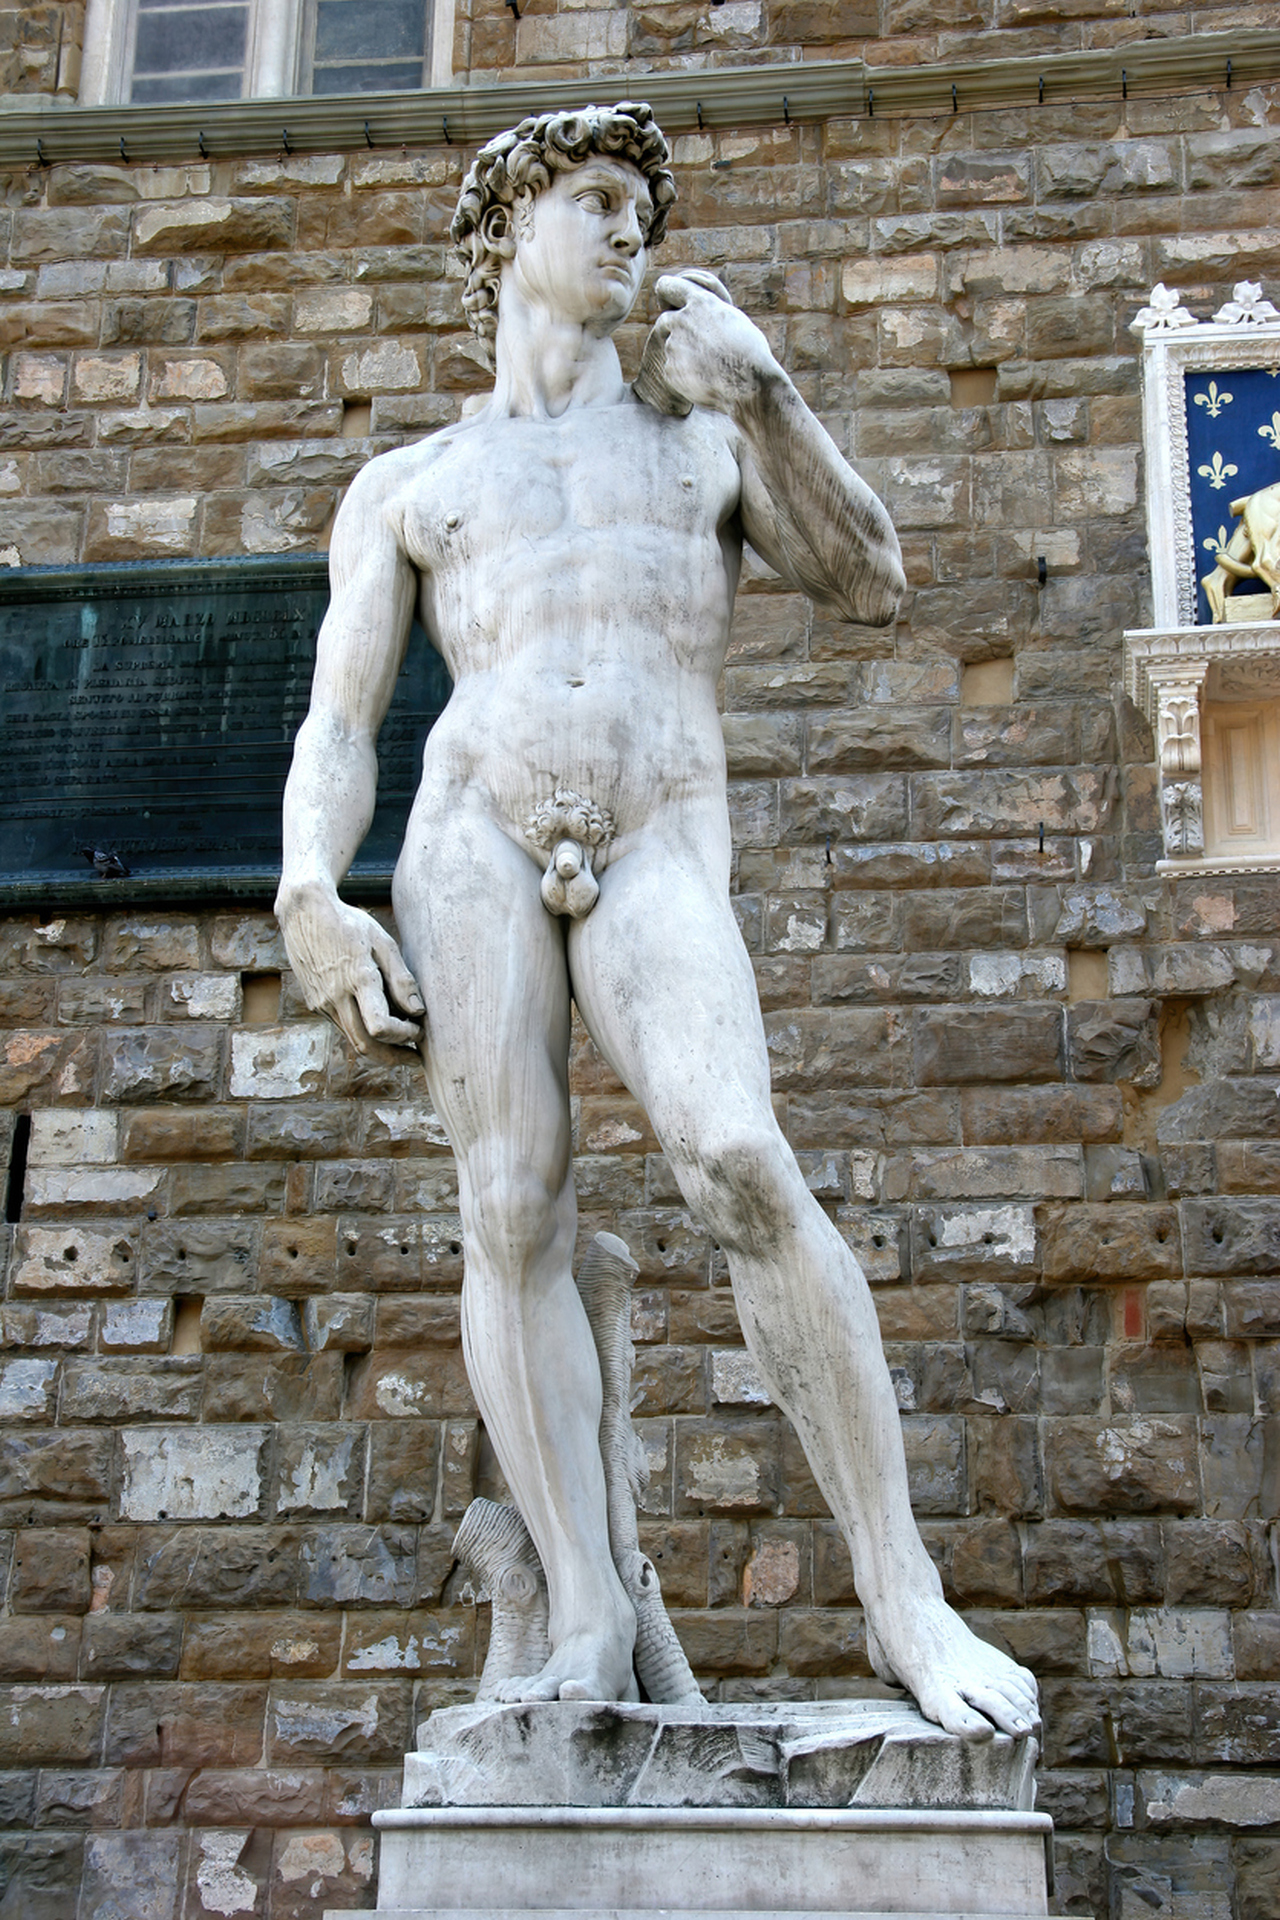 <p><strong>&quot;Давид&quot; на Микеланджело</strong></p>

<p>Емблематичната статуя на също толкова емблематичния ренесансов художник също крие тайна. Давид държи оръжие (едва видимо) в дясната си ръка. Това скрито оръжие се нарича фустибал, което се използва за хвърляне на предмети.</p>